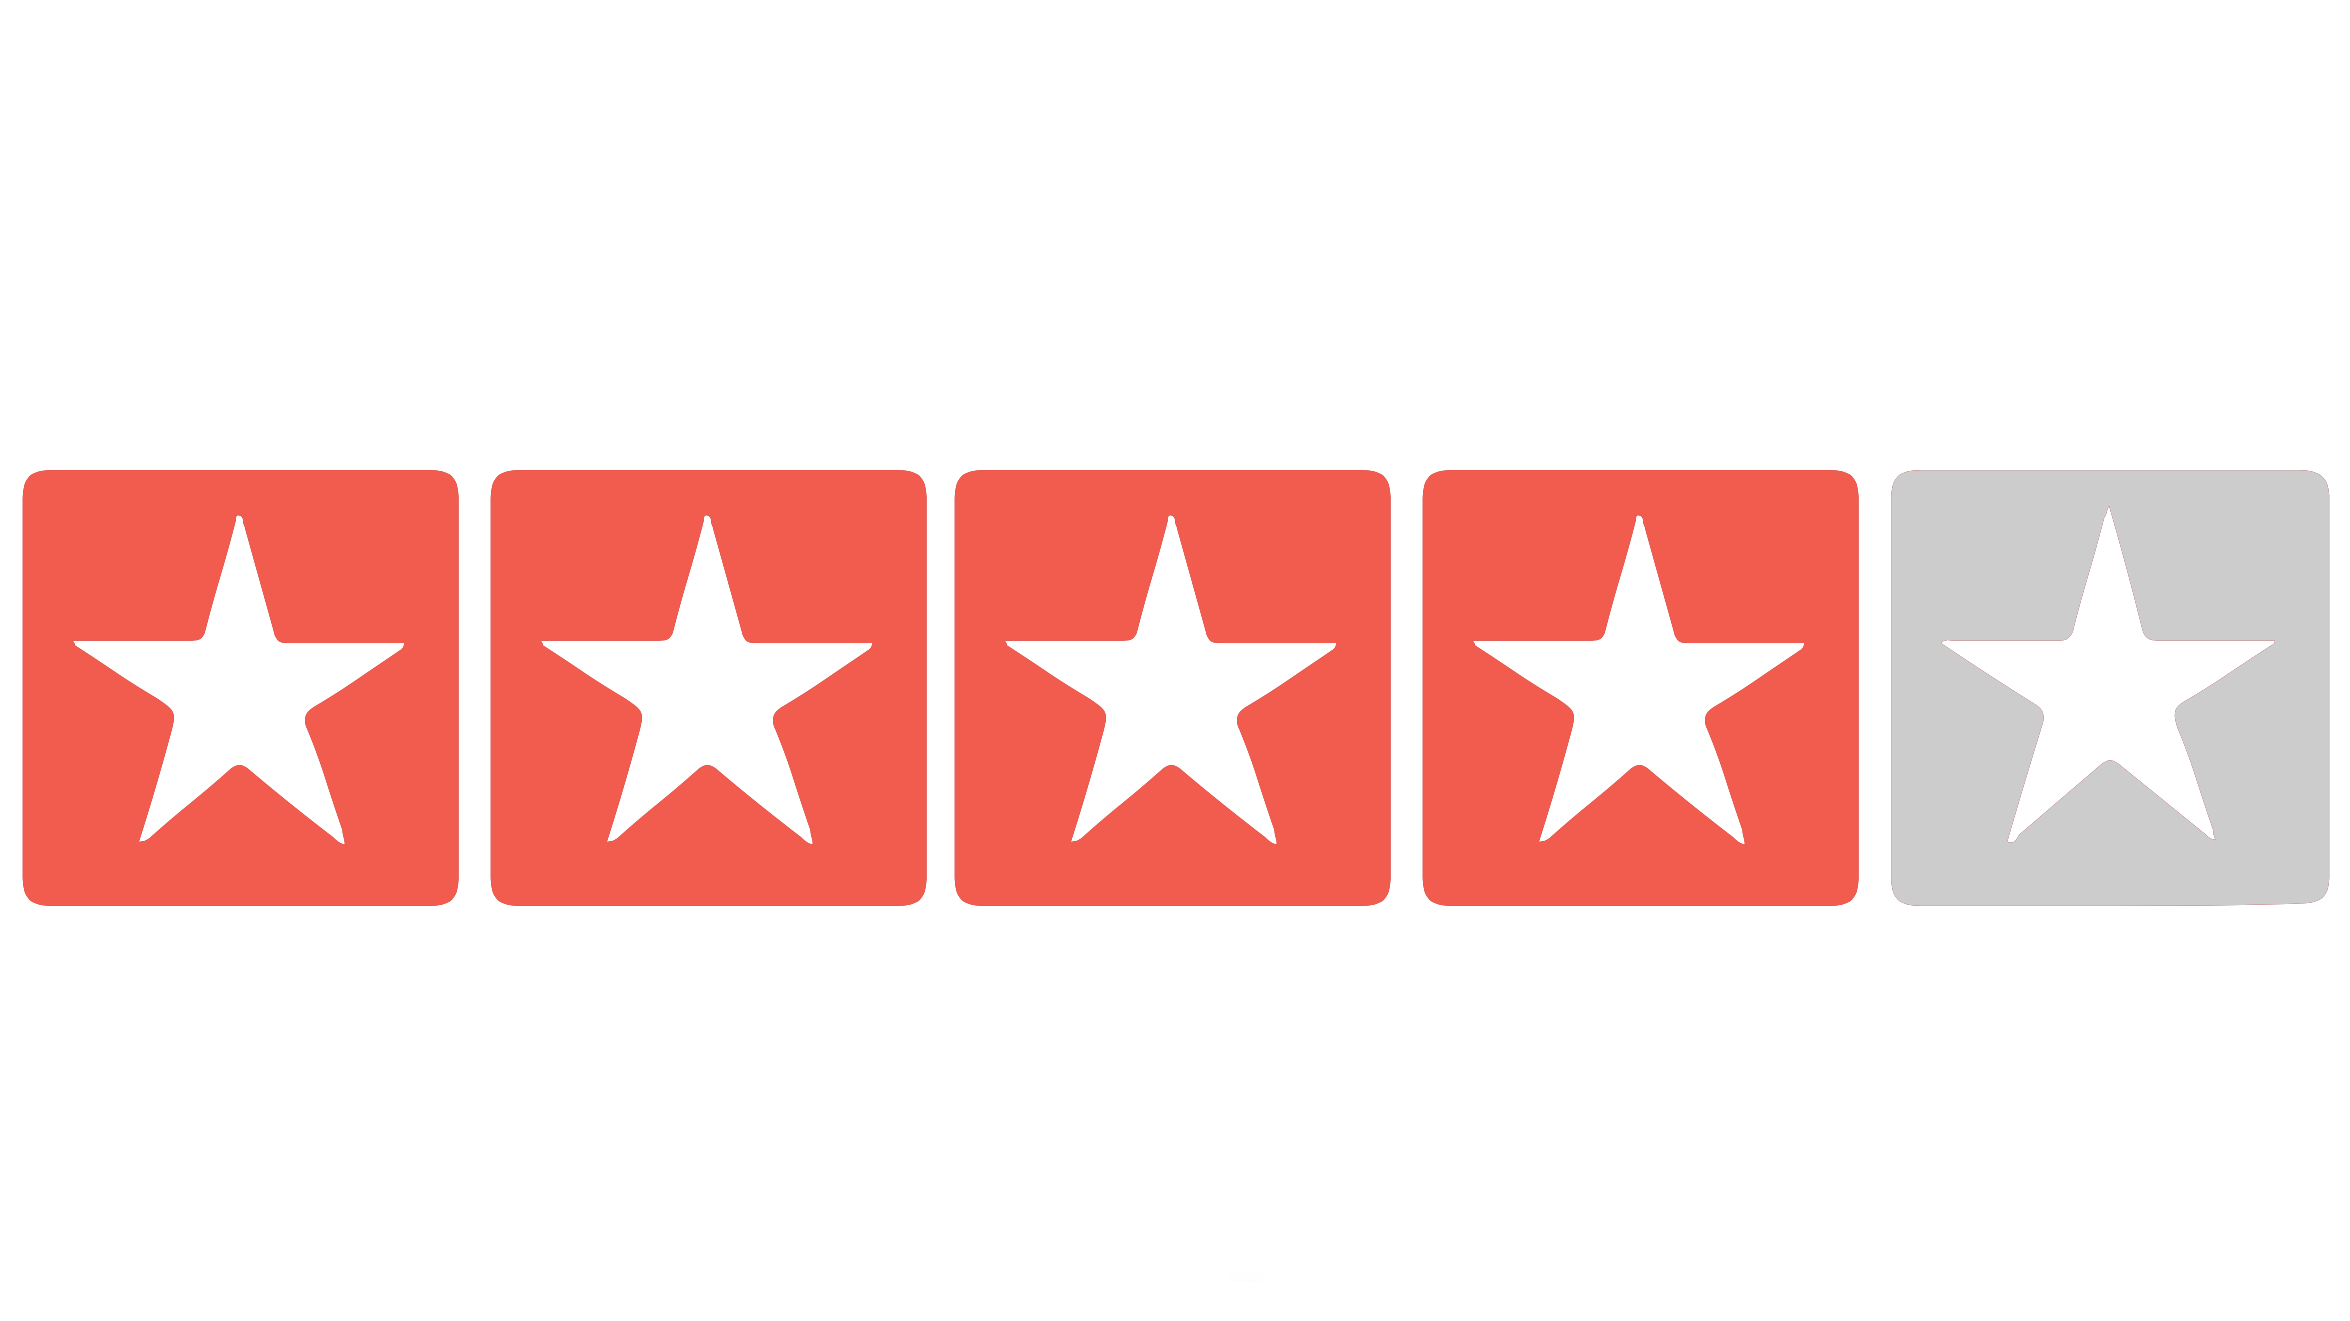 Chris G’s Best Yelp Reviews: Cementiri de Montjuic (Spanish Translation) – 4/5 Stars